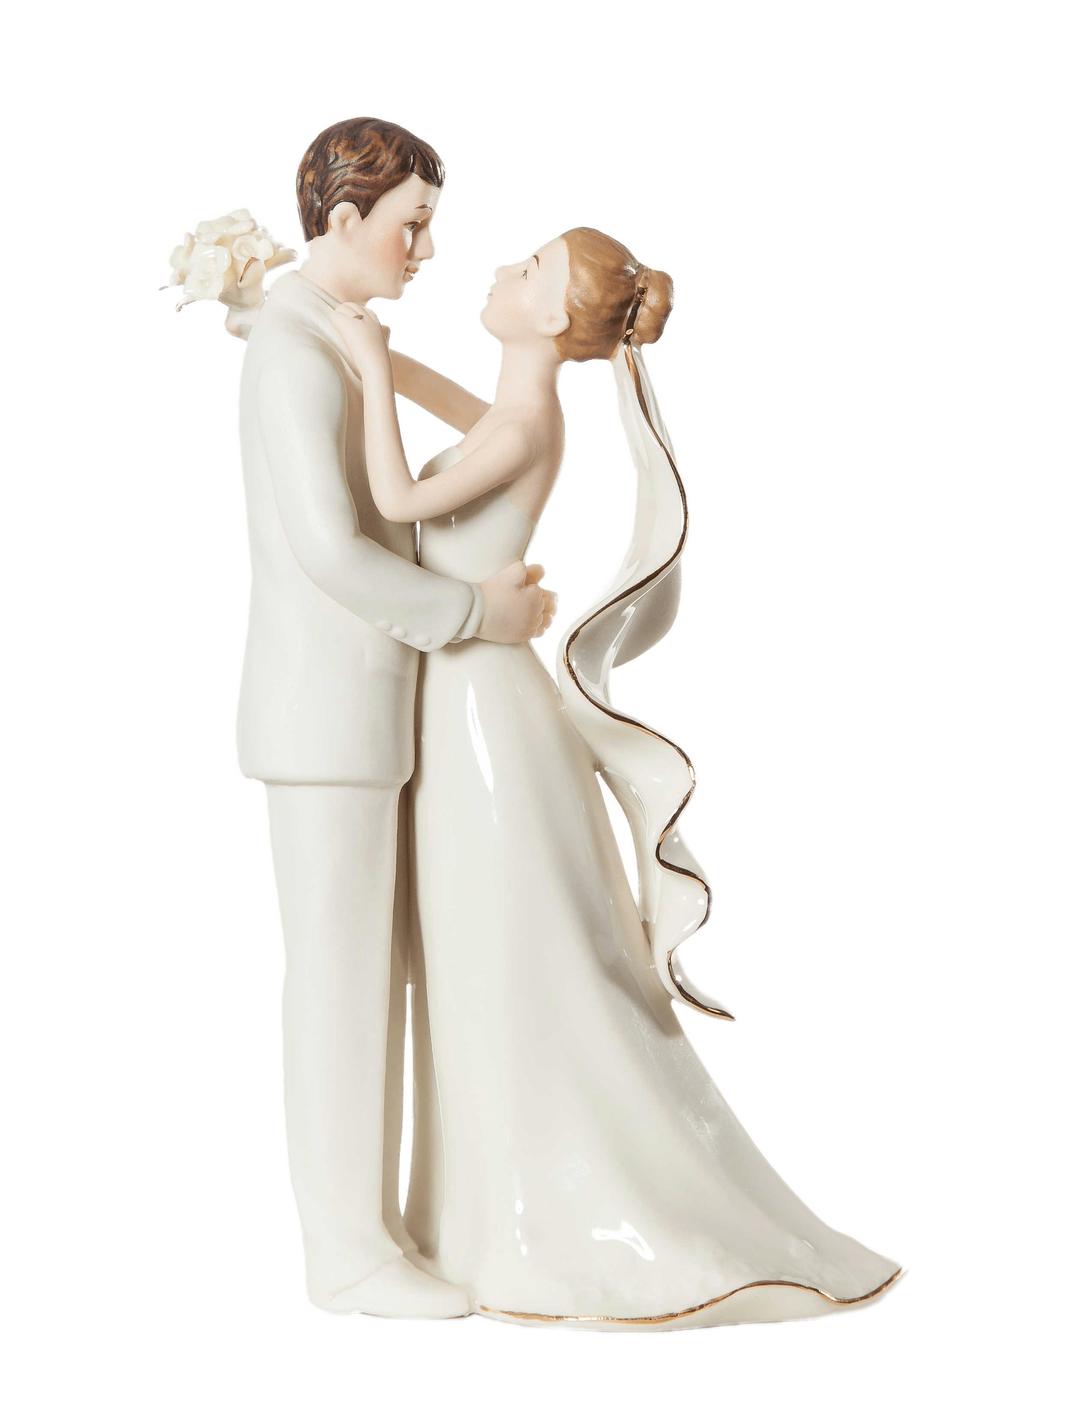 Porcelain Wedding Figurines png transparent